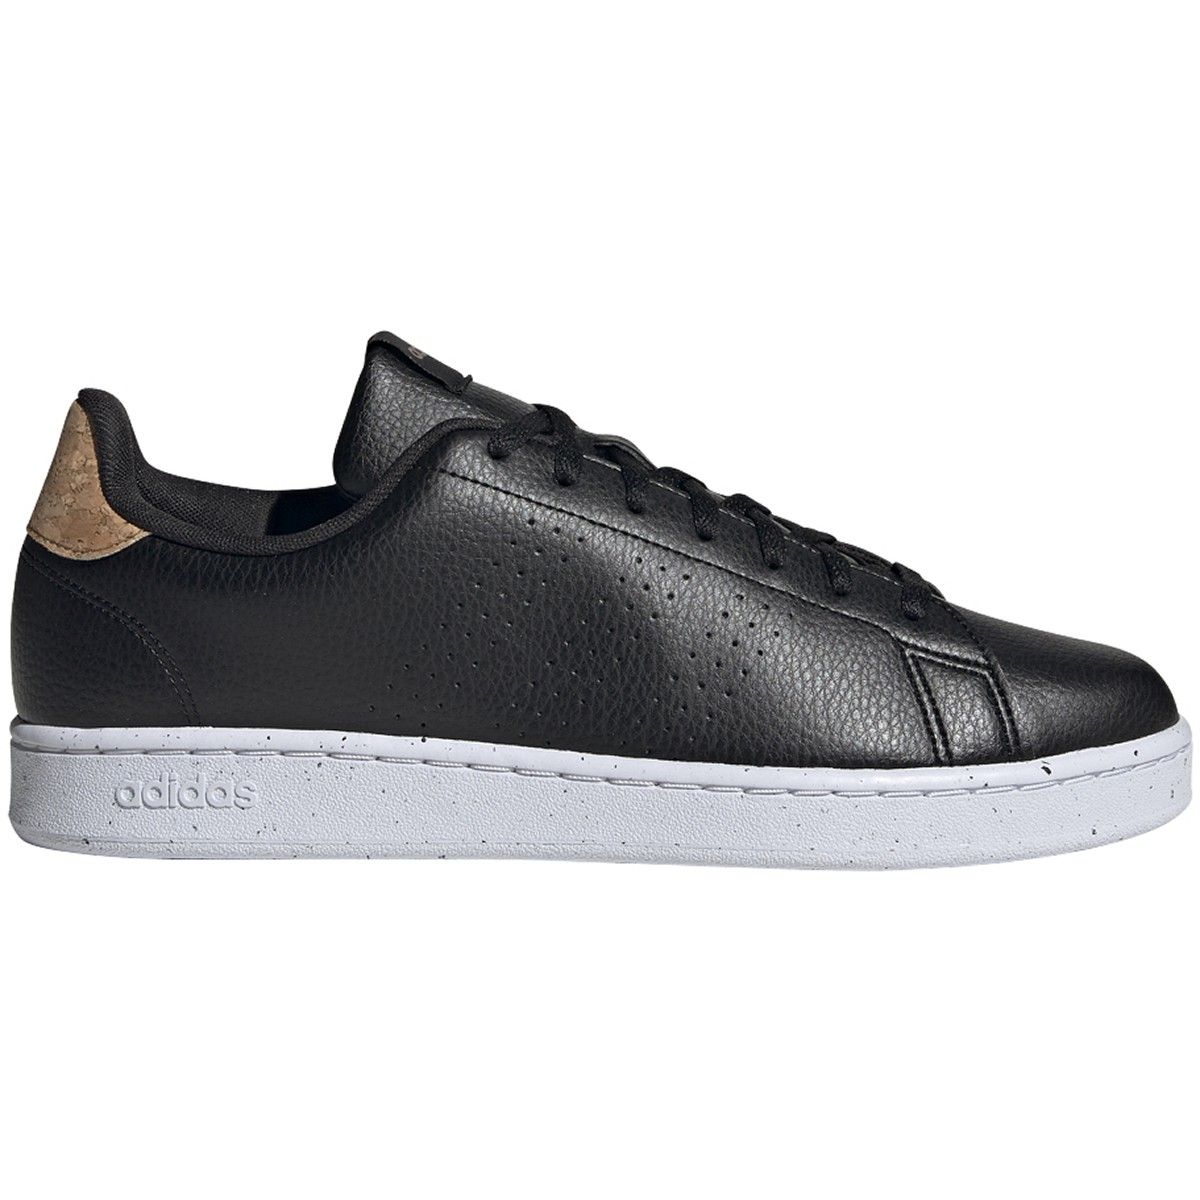 Adidas Women's Cloudfoam Advantage AW4288 Black White Sneakers Shoes Size  9.5 | eBay